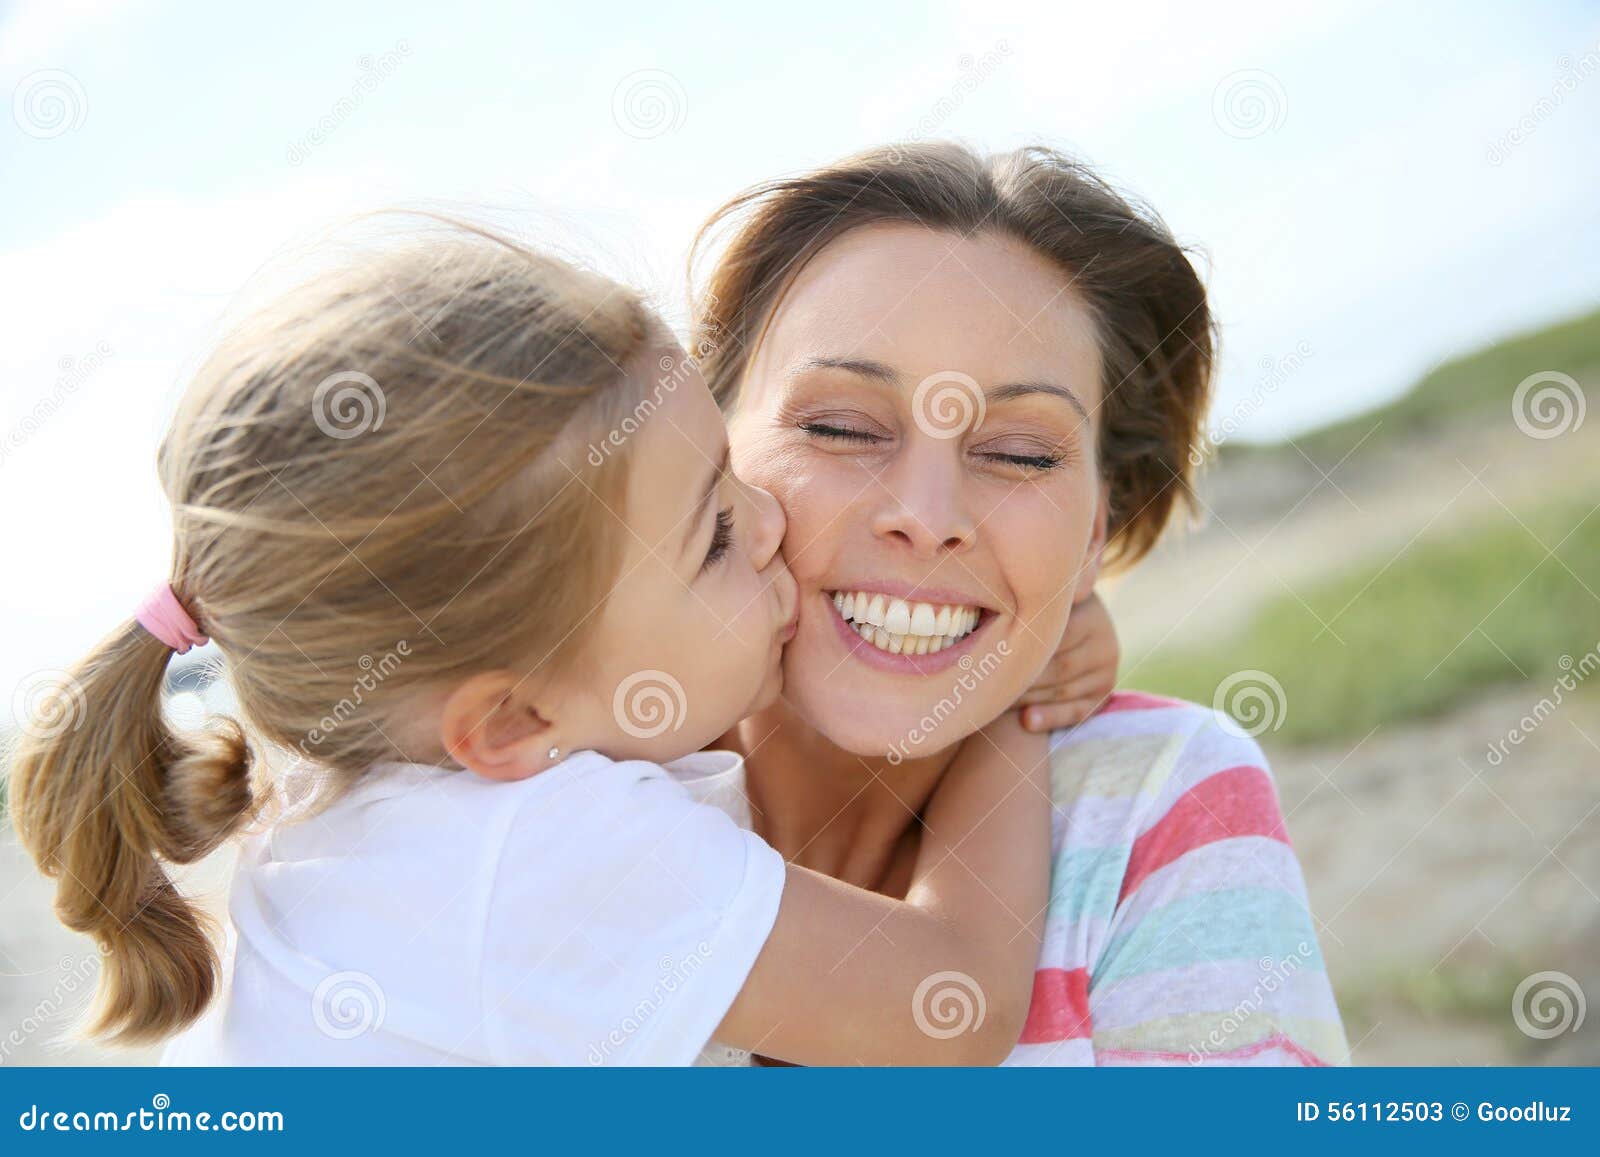 Красиво лижет маме. Девочка целует маму. Девочка целует маму в щеку. Две девочки целуют папу. Мама целует папу в щеку.